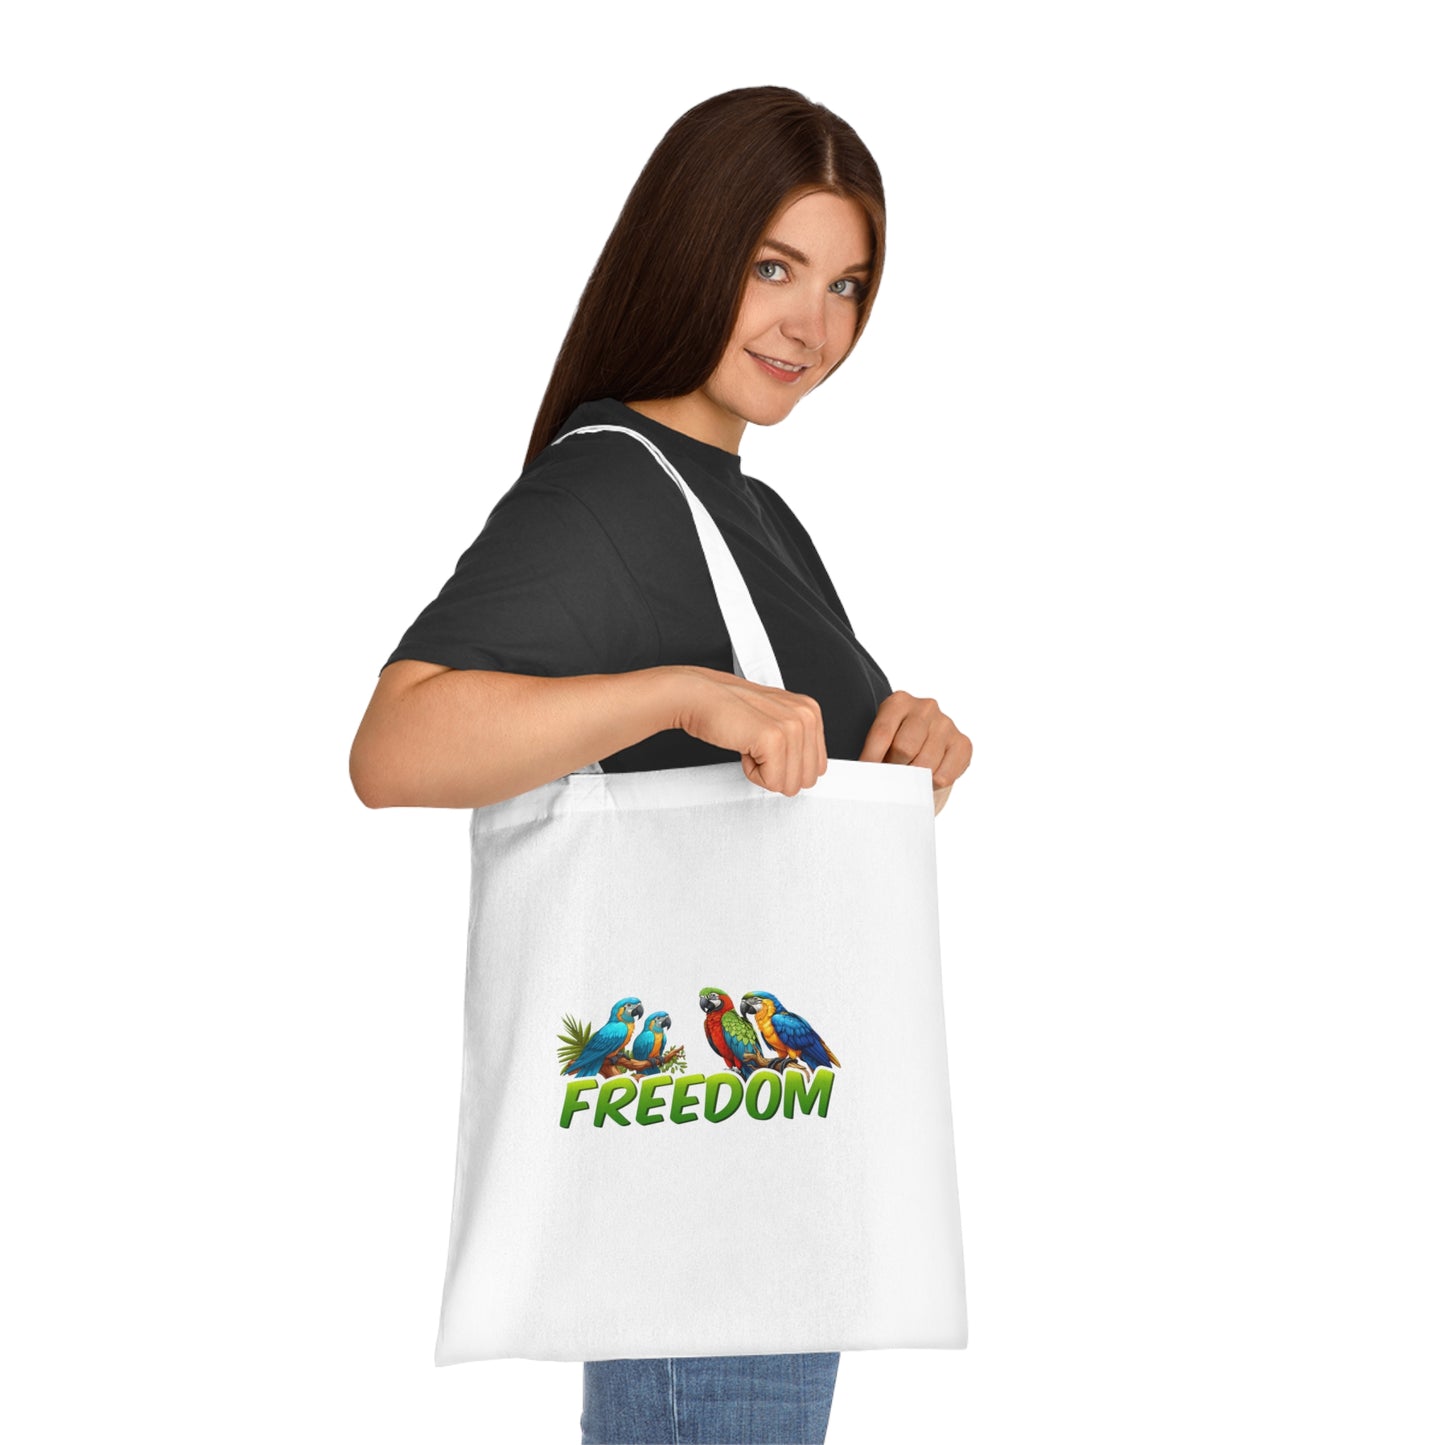 Freedom Tote Bag